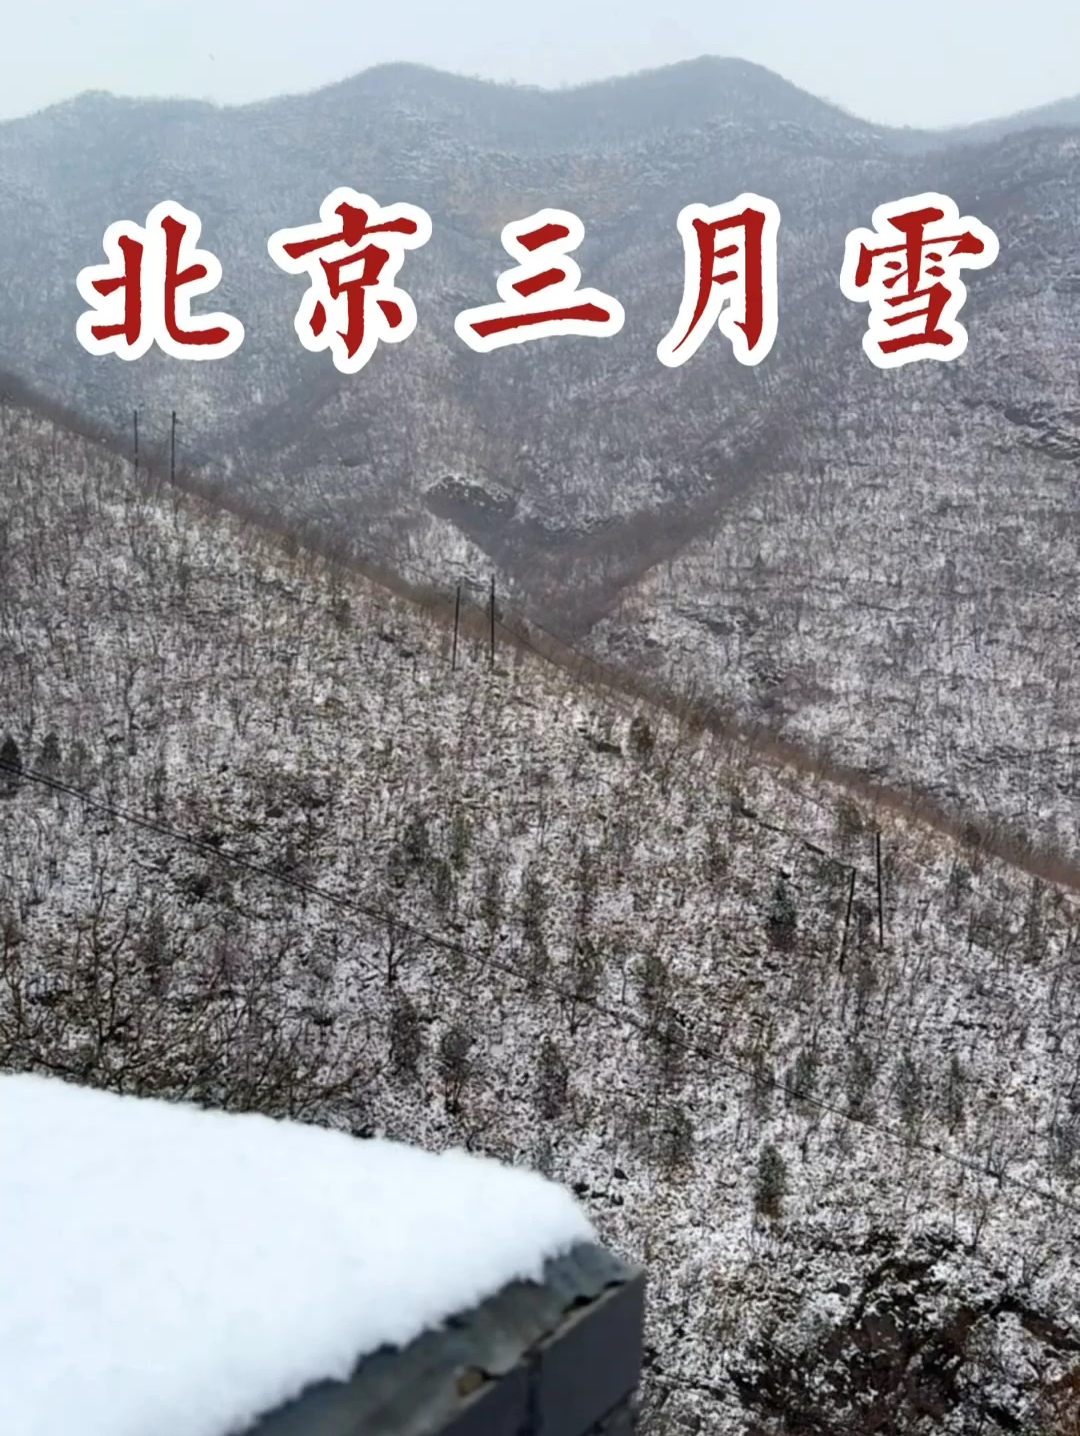 3.5北京雪景实拍